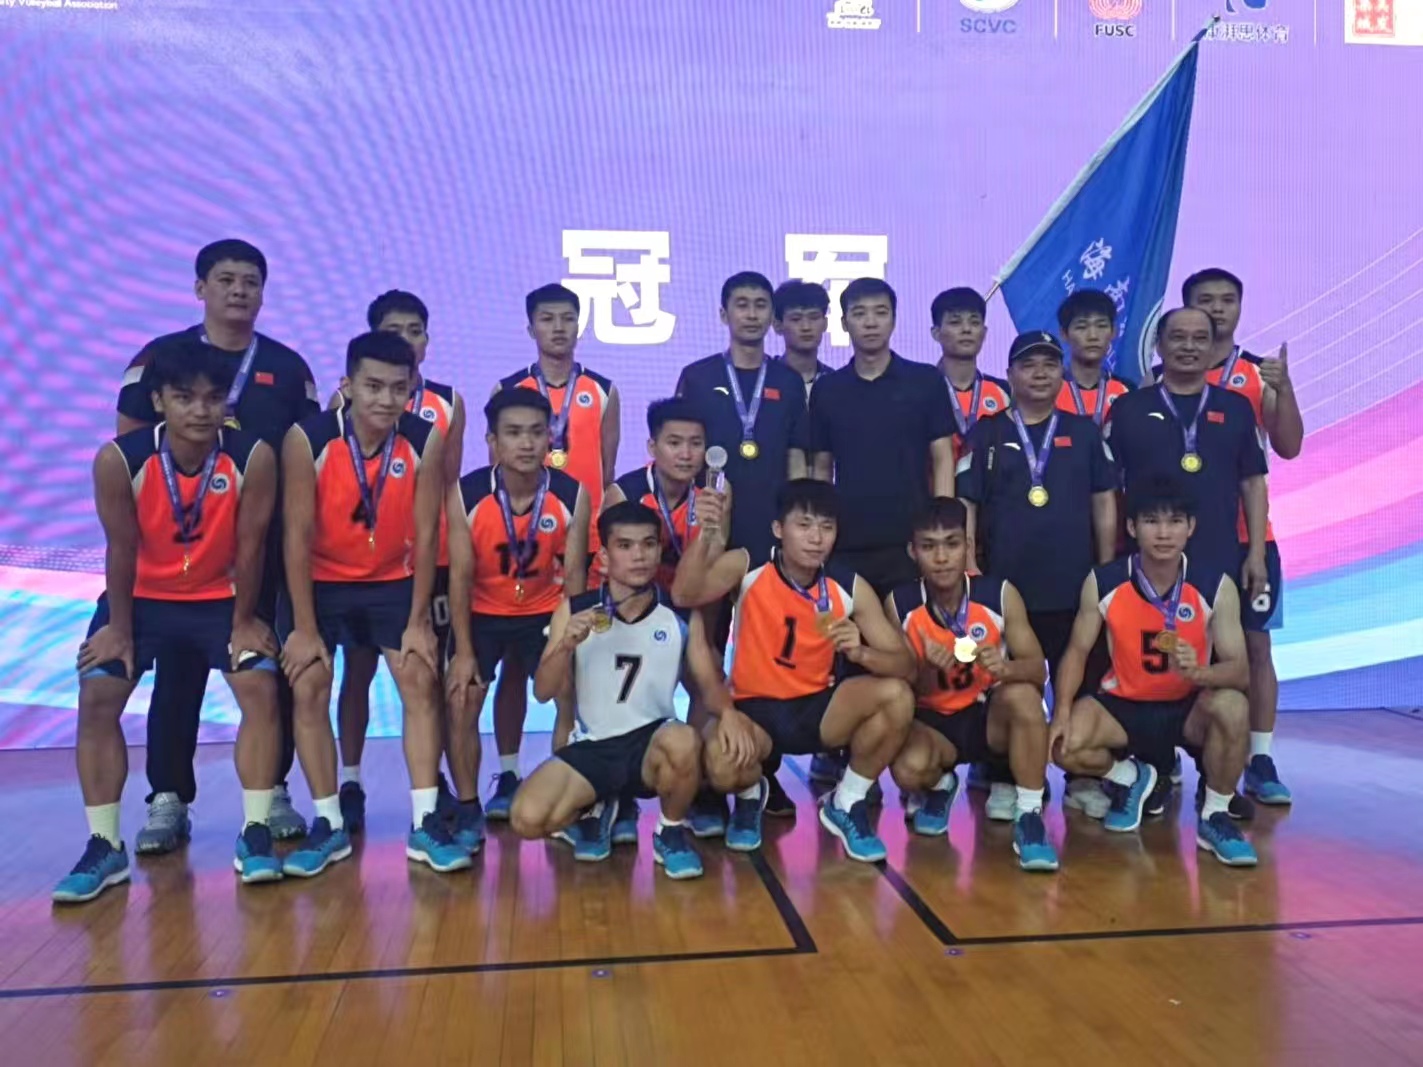 海南软件职业技术学院男子排球队挂上冠军奖牌。